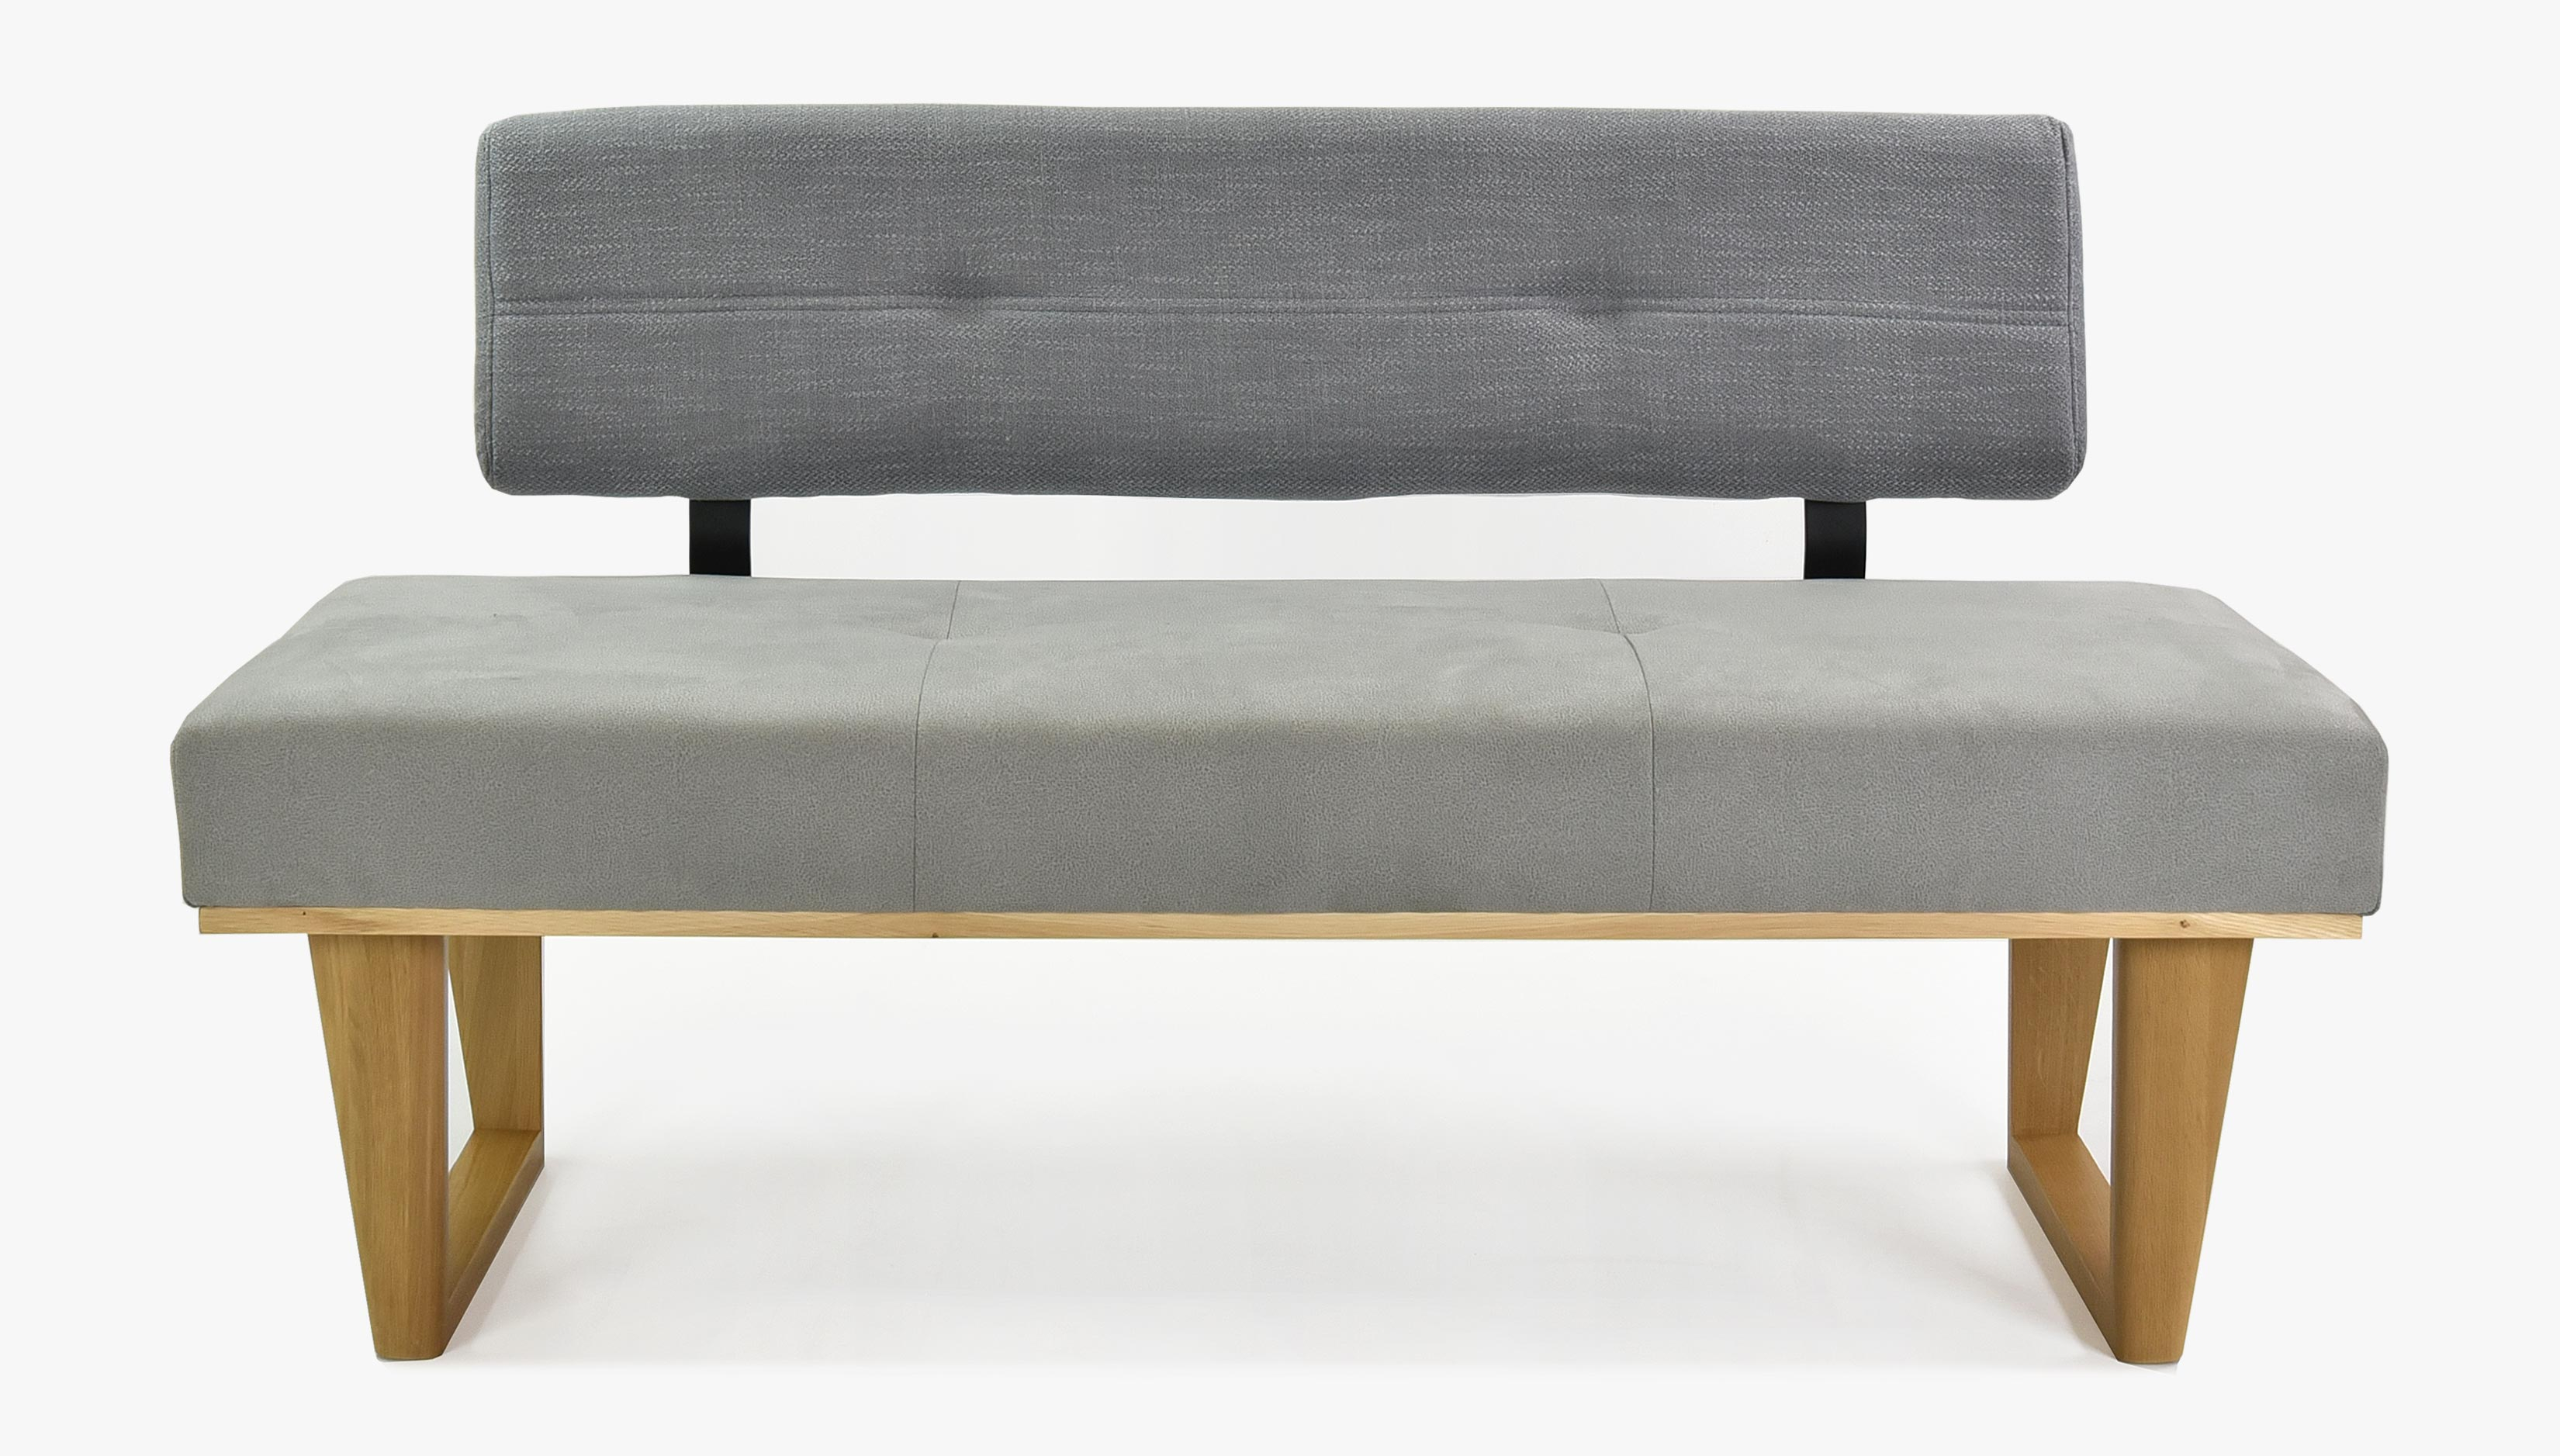 Moderní lavice do jídelny šedá 150 cm dlouhá - model Colmar